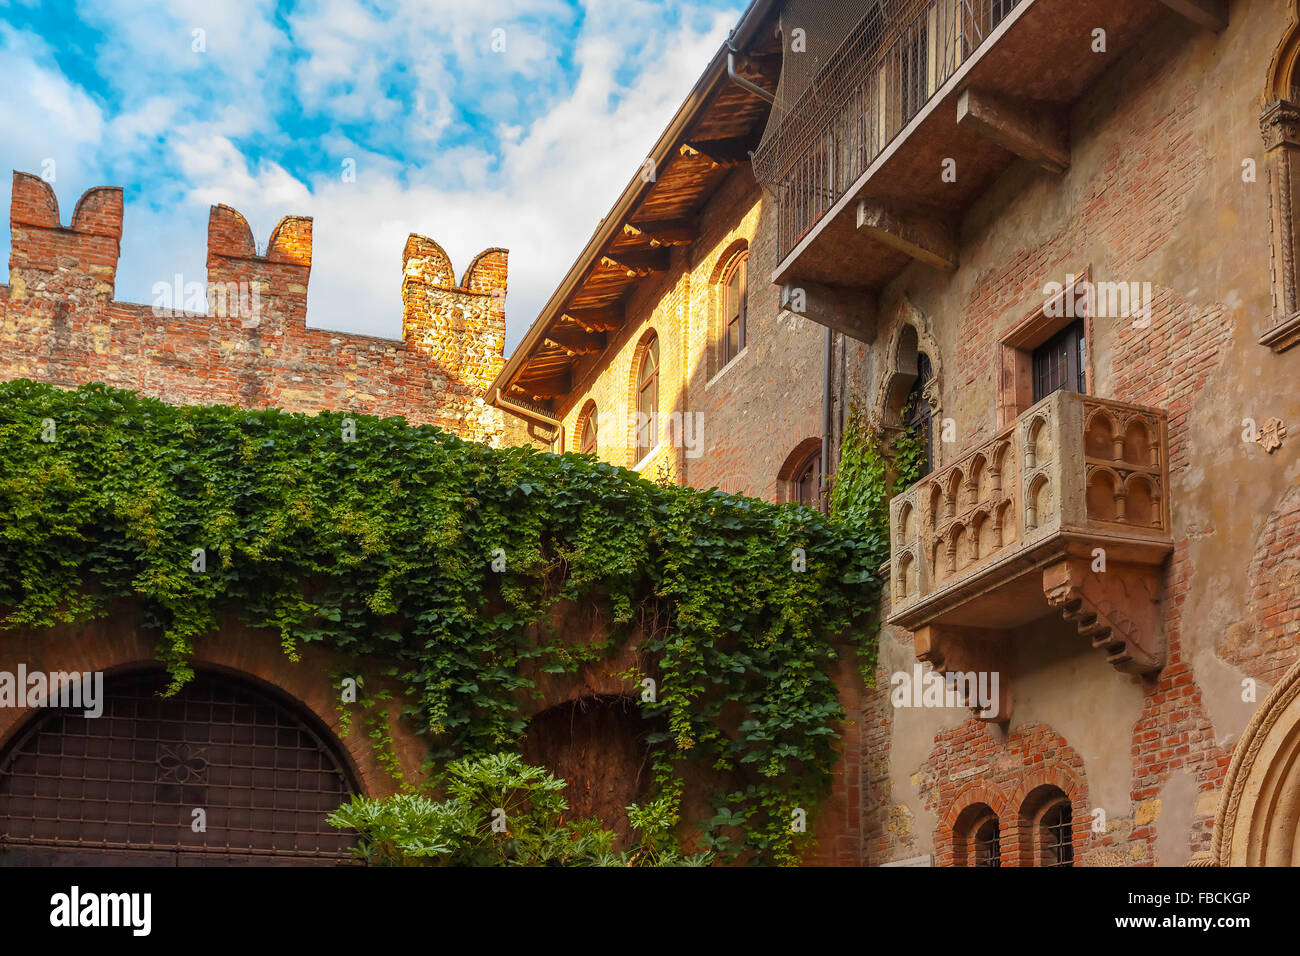 Romeo and Juliet balcony in Verona, Italy Stock Photo